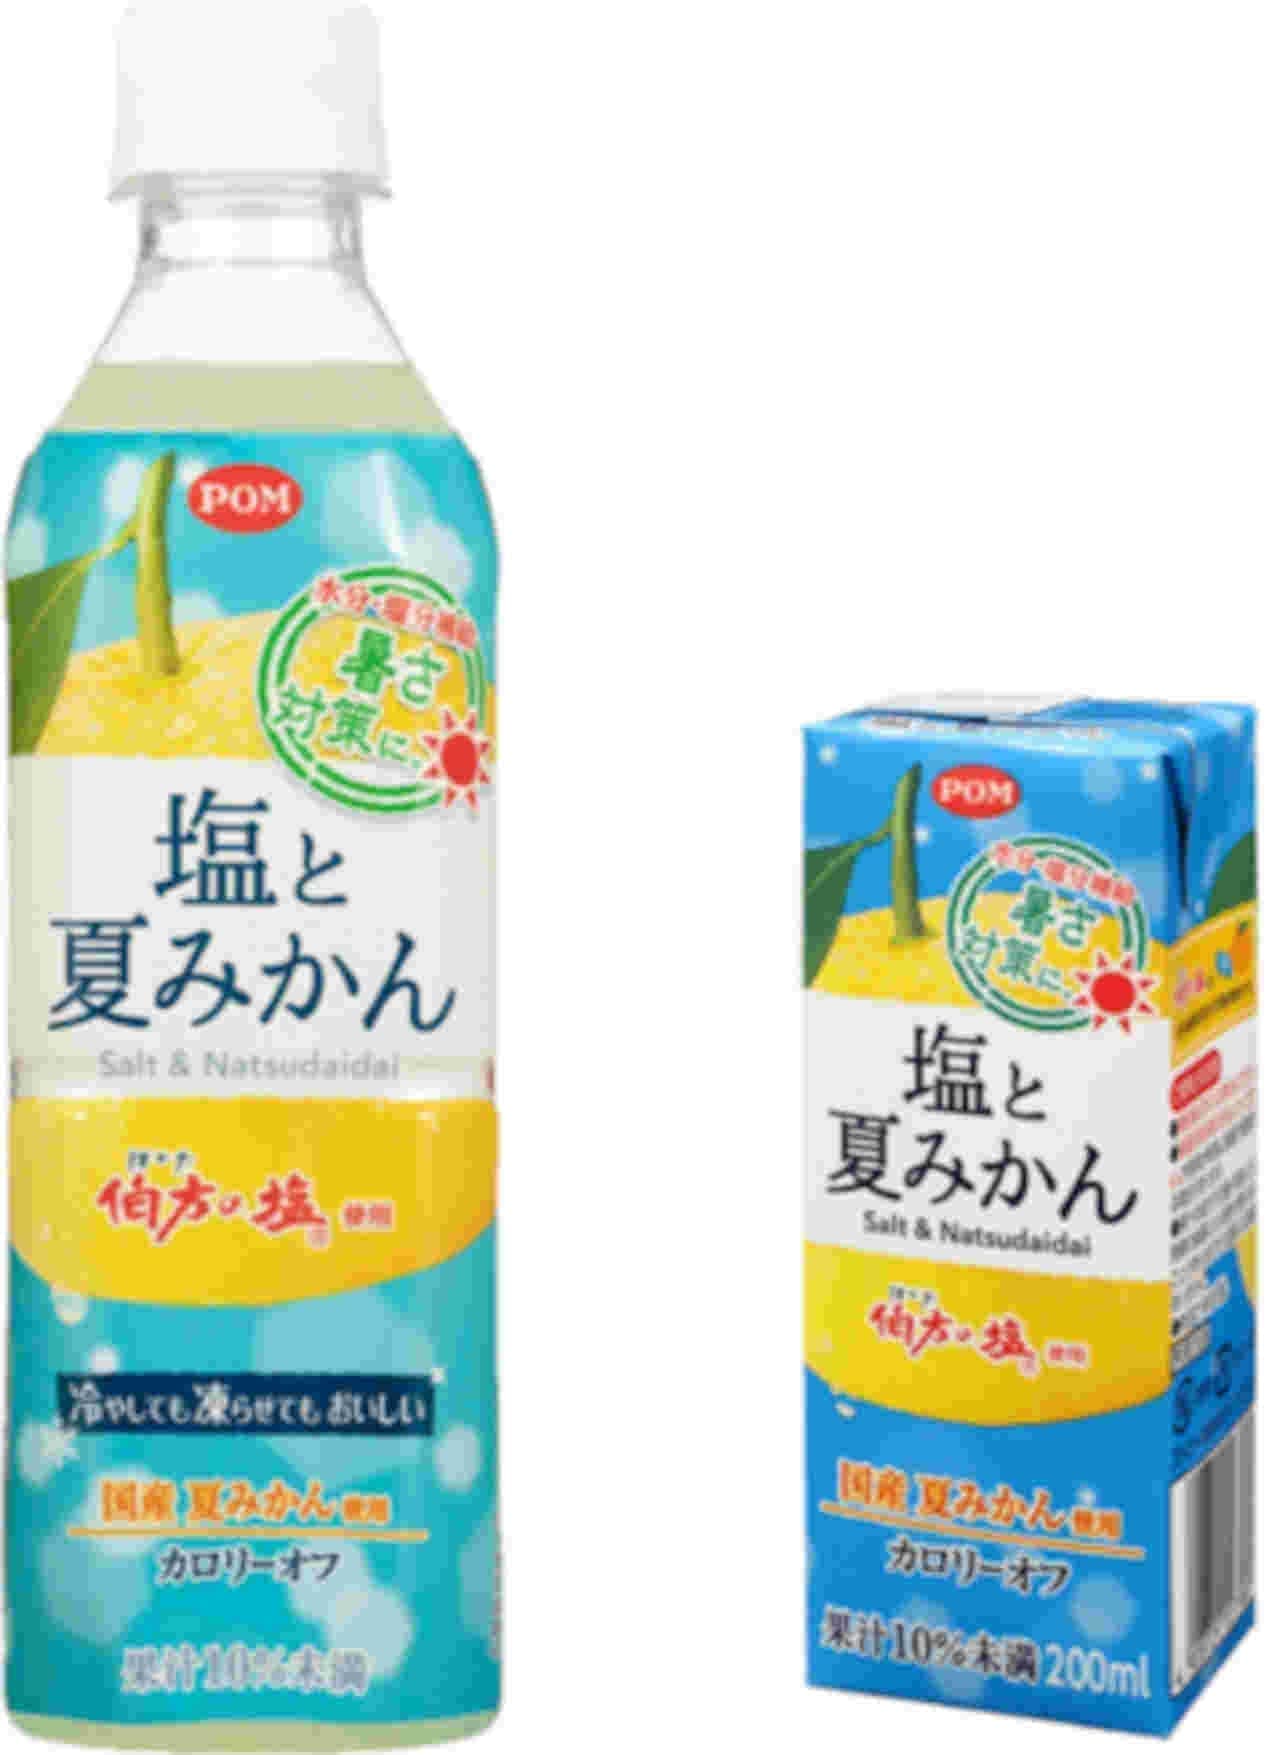 Ehime Beverage "POM Salt and Summer Mikan"